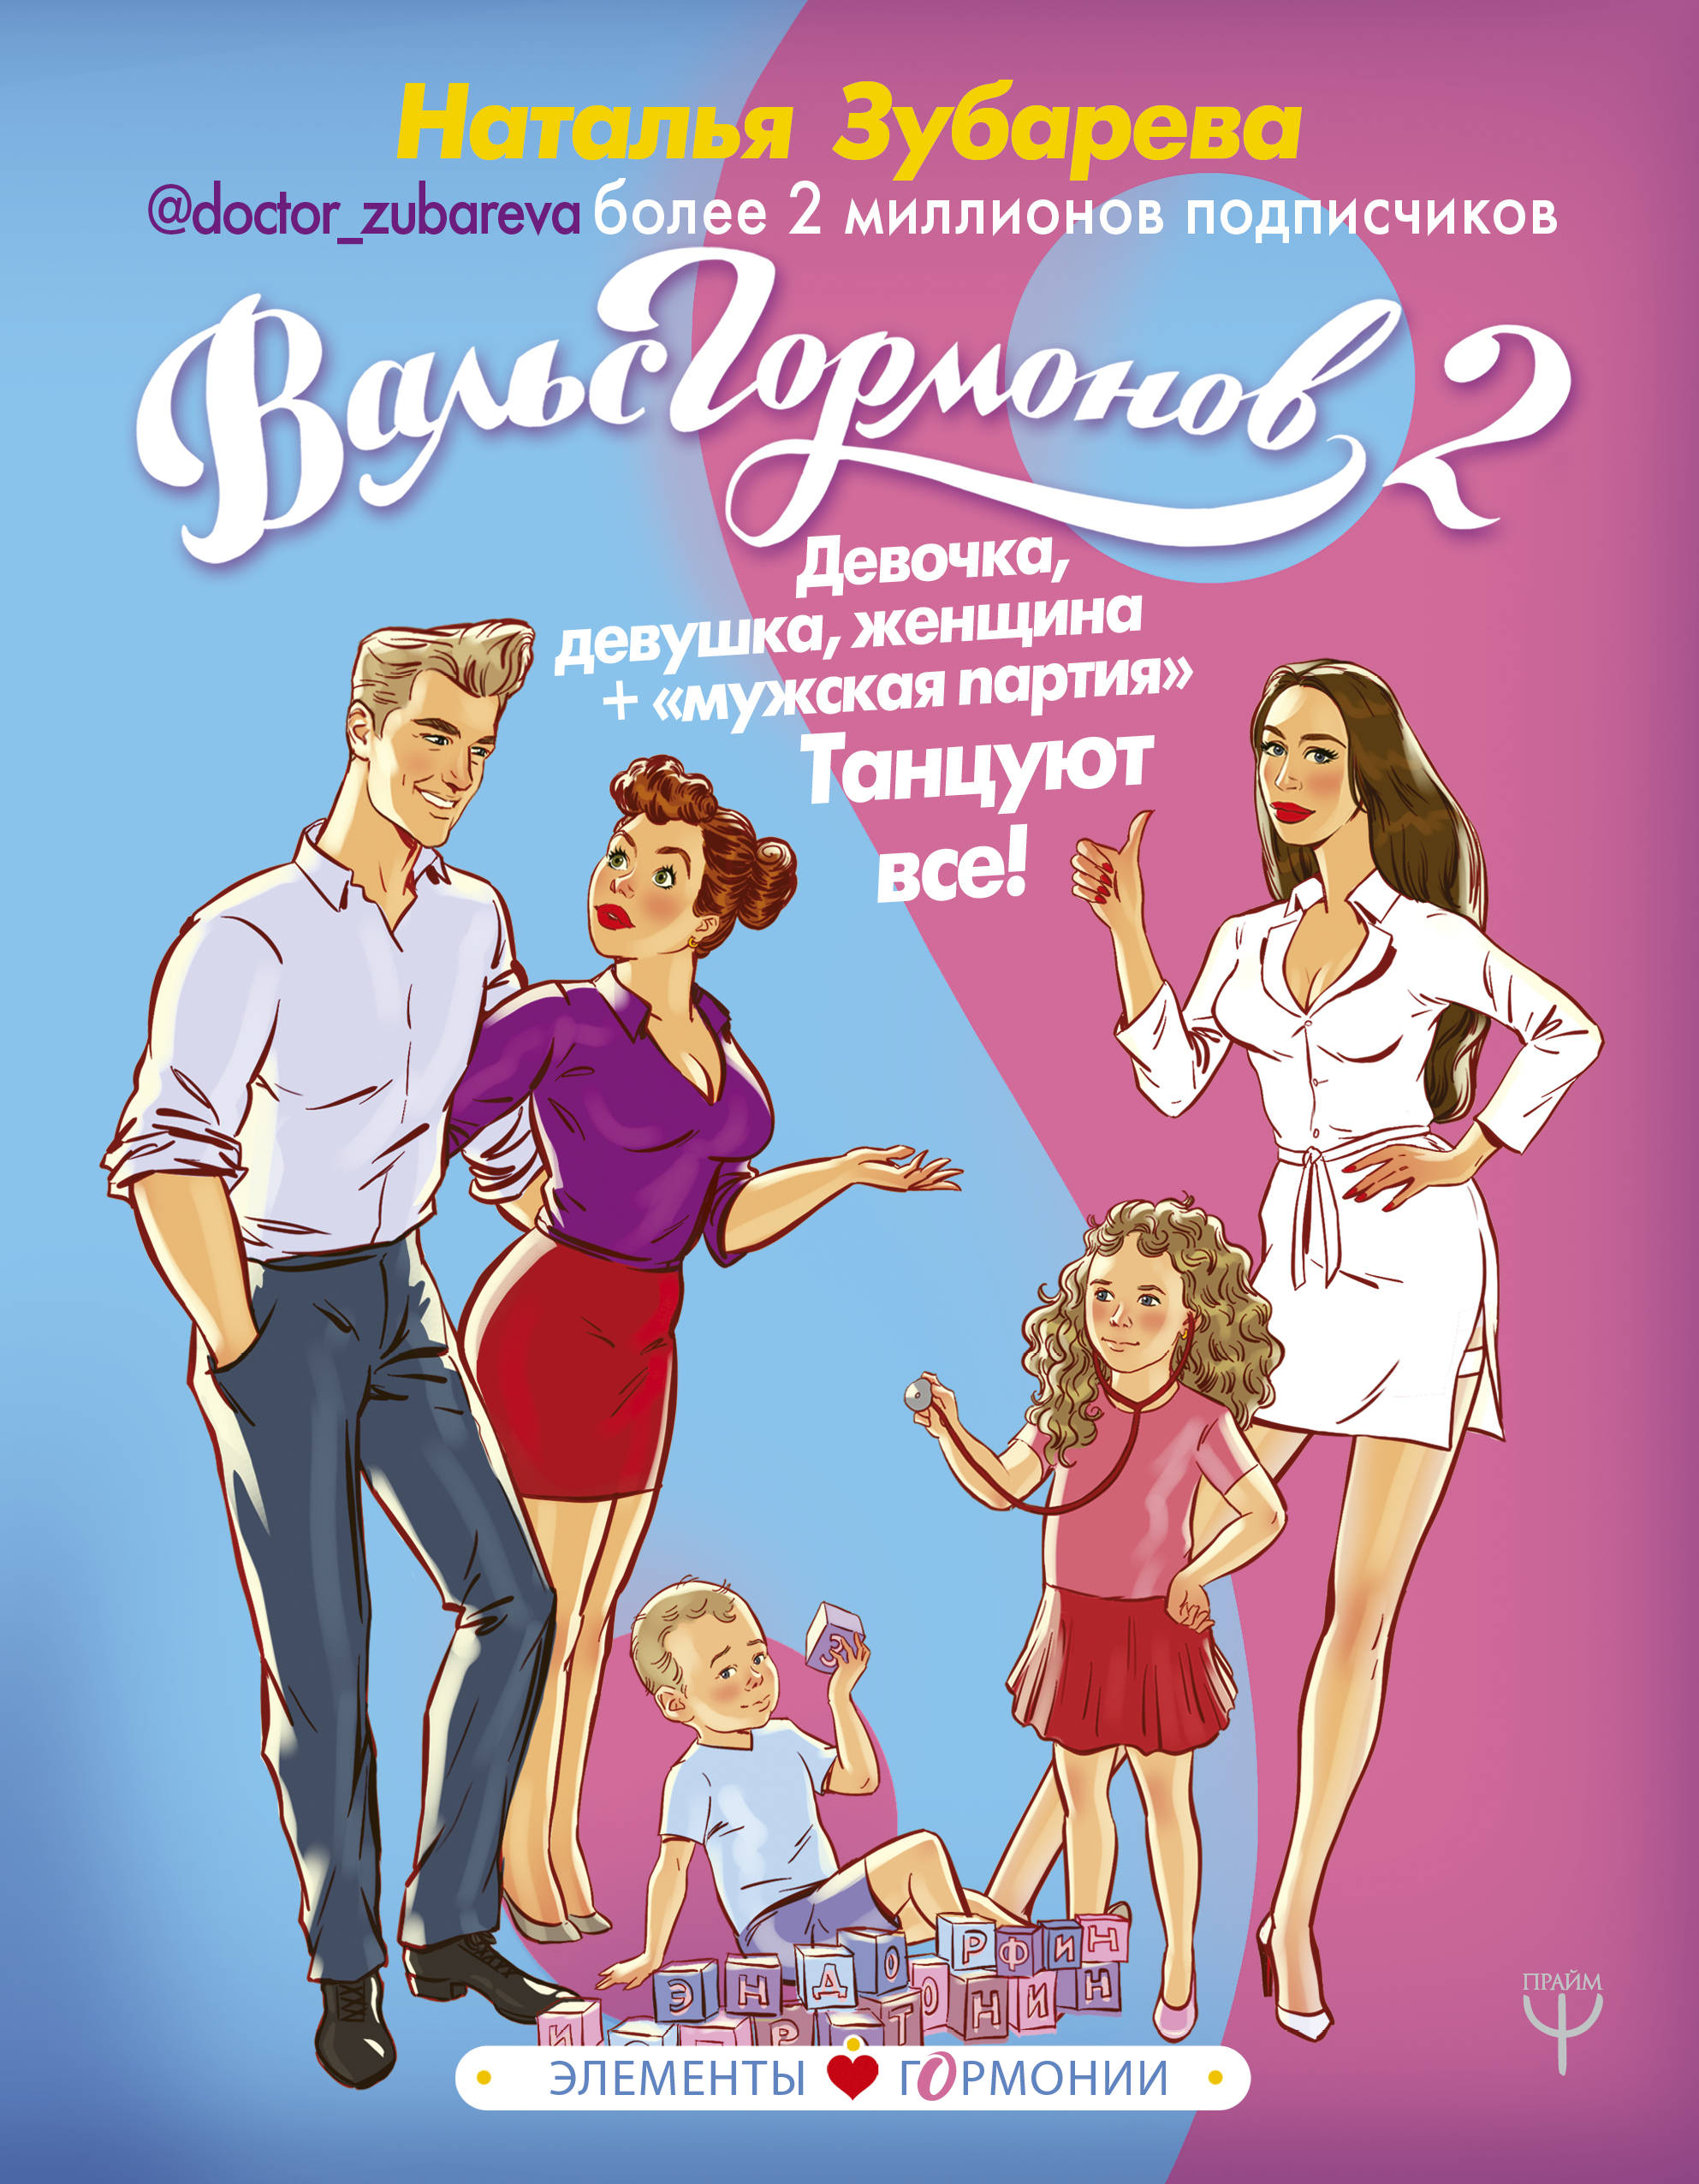 Book “Вальс Гормонов 2” by Наталья Зубарева